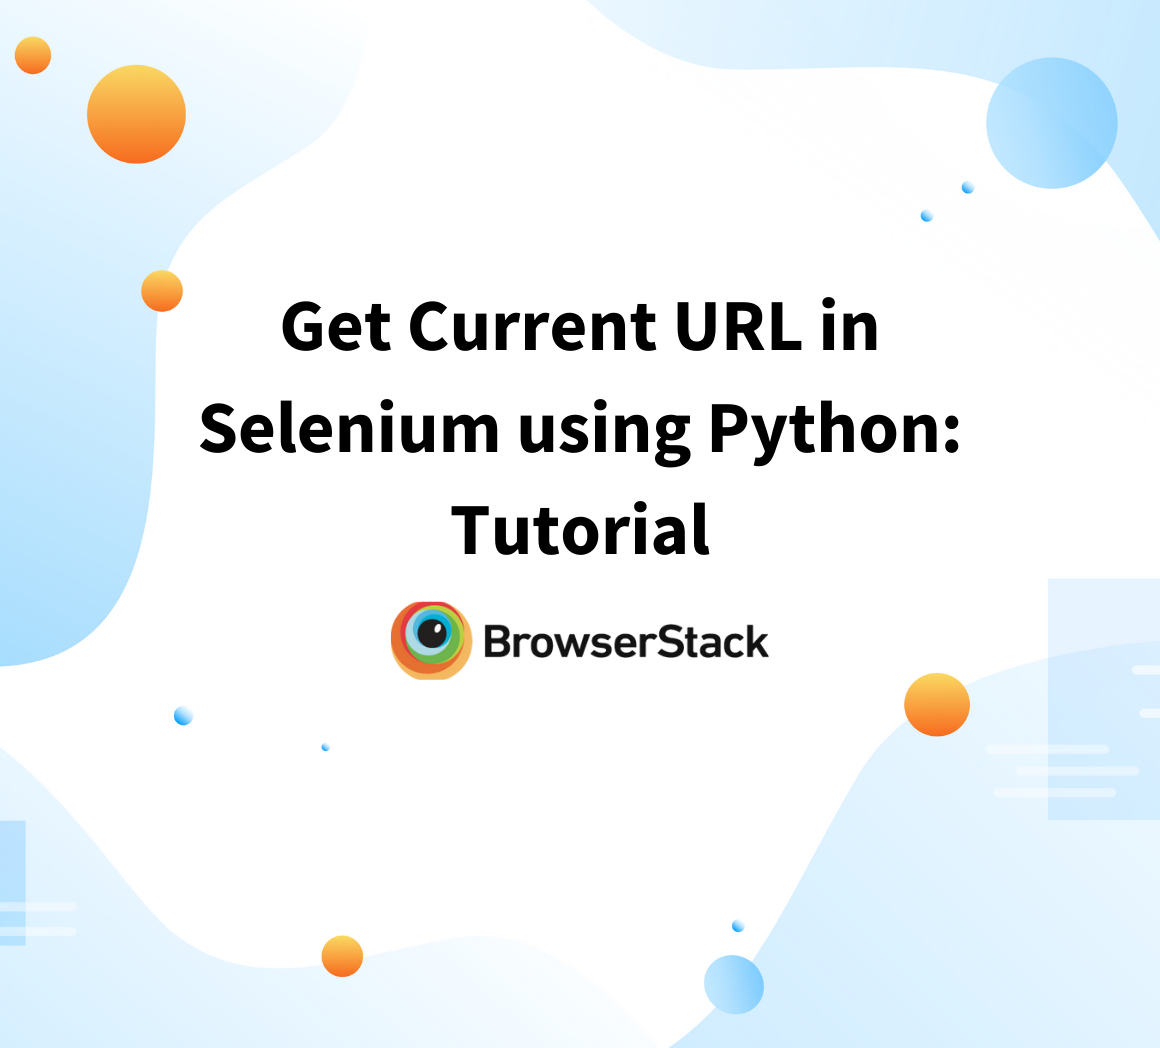 Get Current URL in Selenium using Python: Tutorial